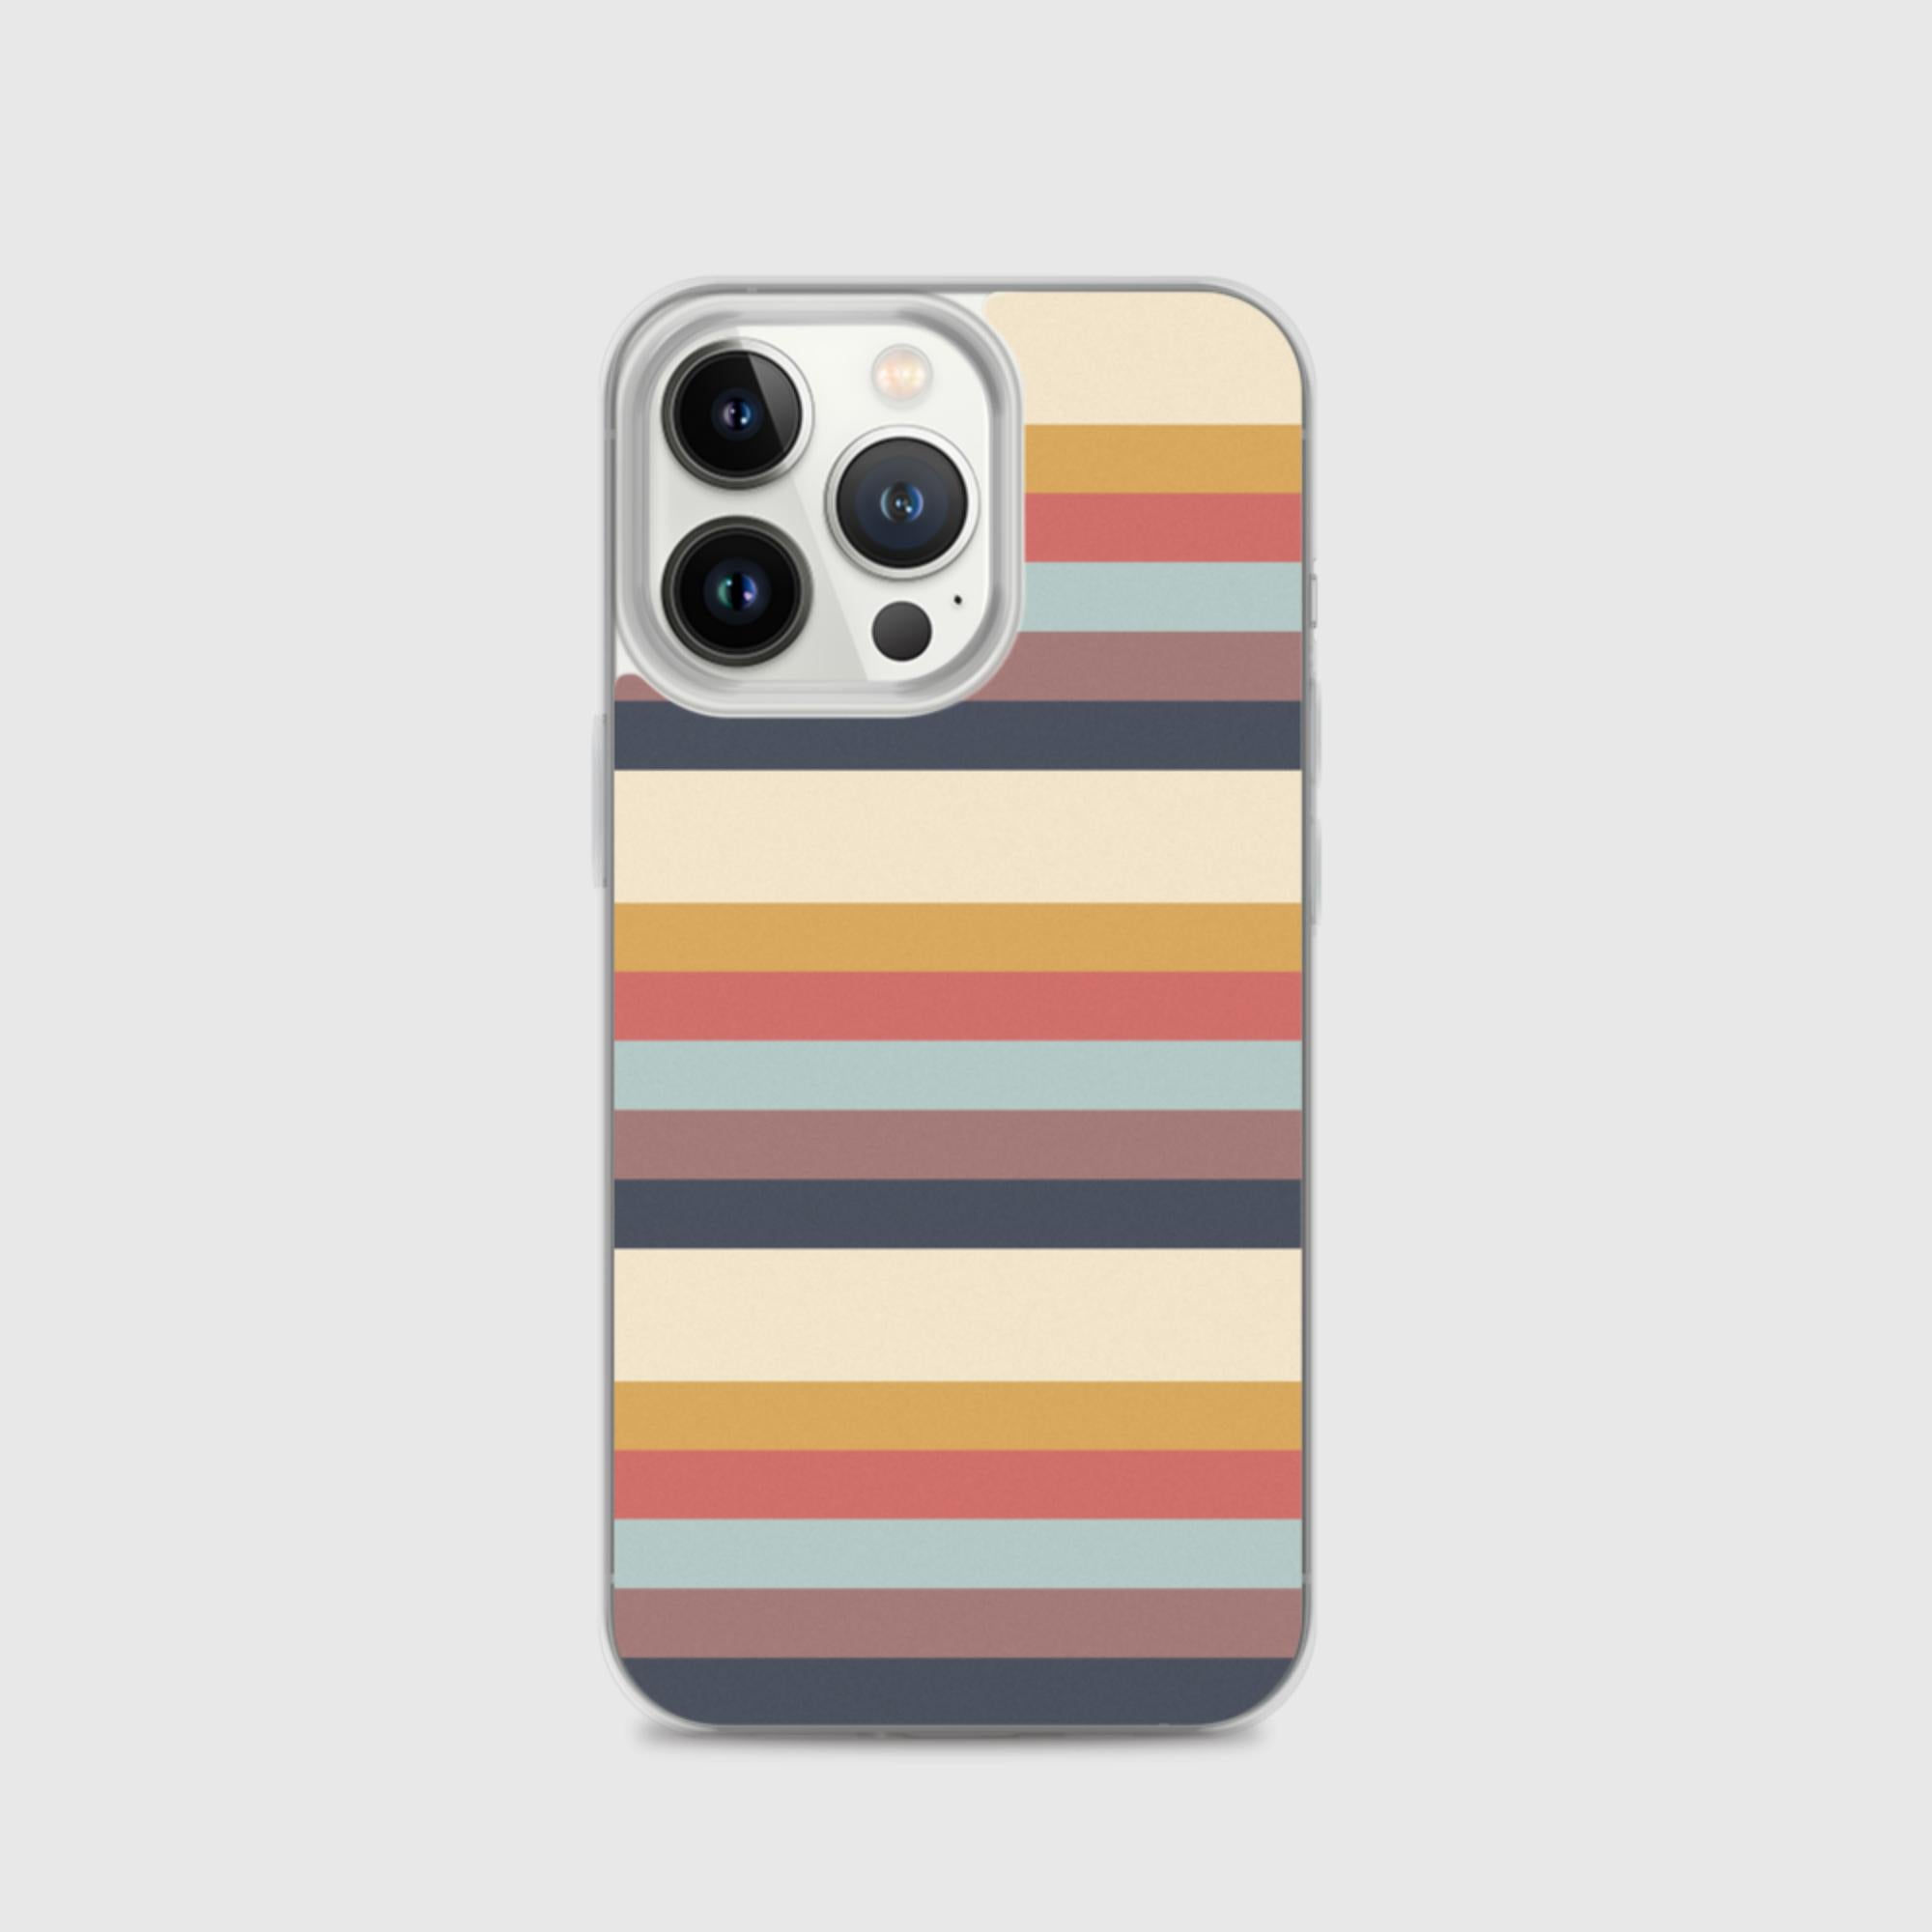 iPhone Case - Stripes - Sunset Harbor Clothing